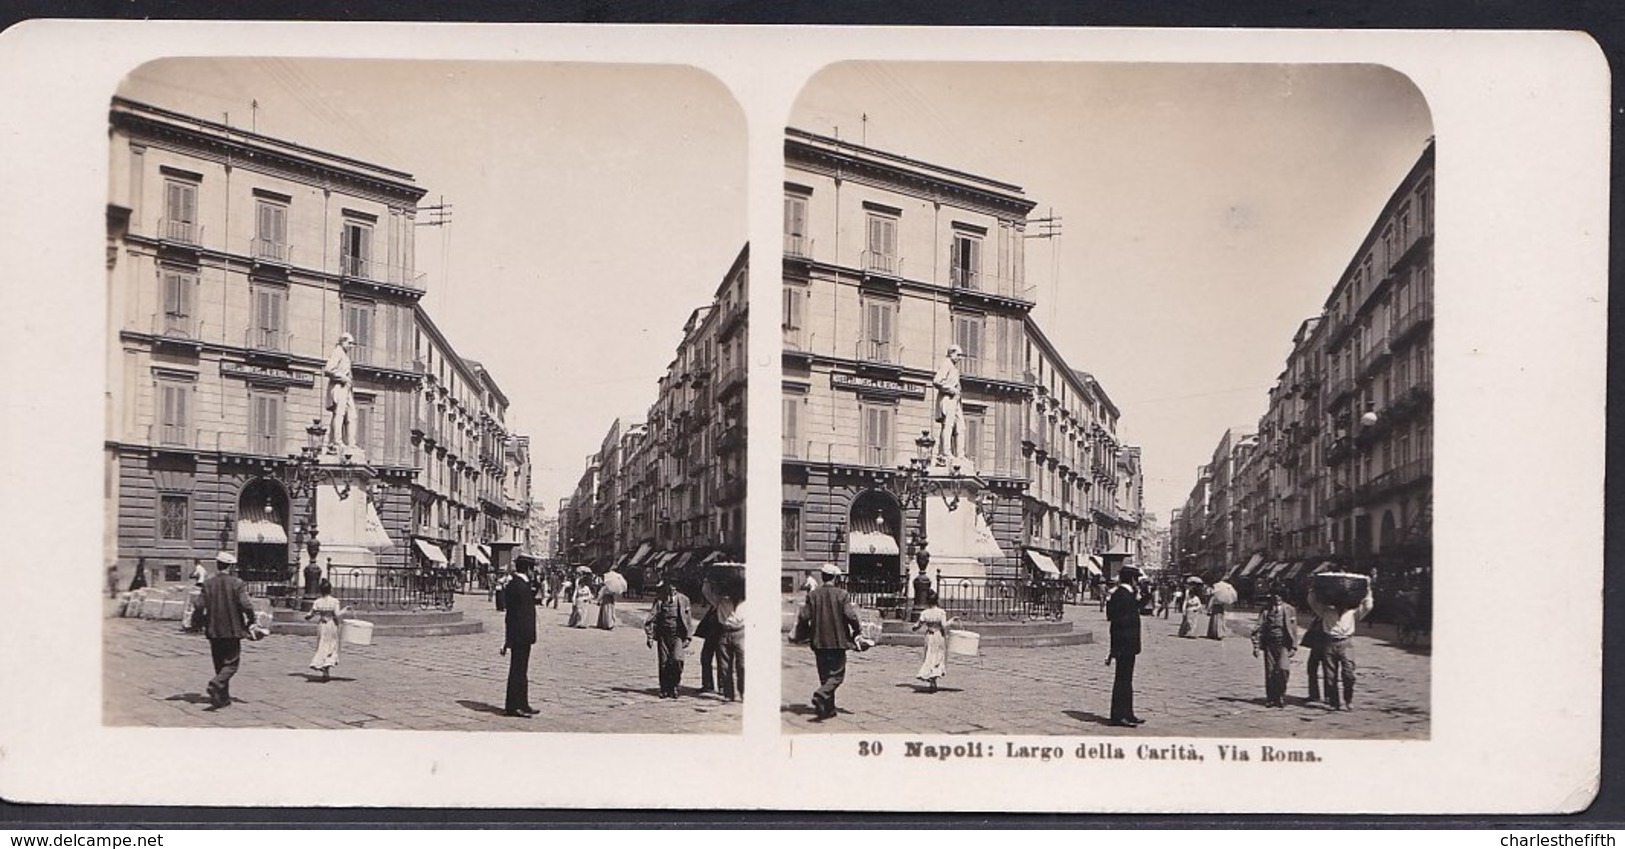 1906 VECCHIA FOTO STEREO ITALIA - CAMPANIA - ** NAPOLI ; LARGO DELLA CARITA - VIA ROMA ** RARE - Stereoscoop